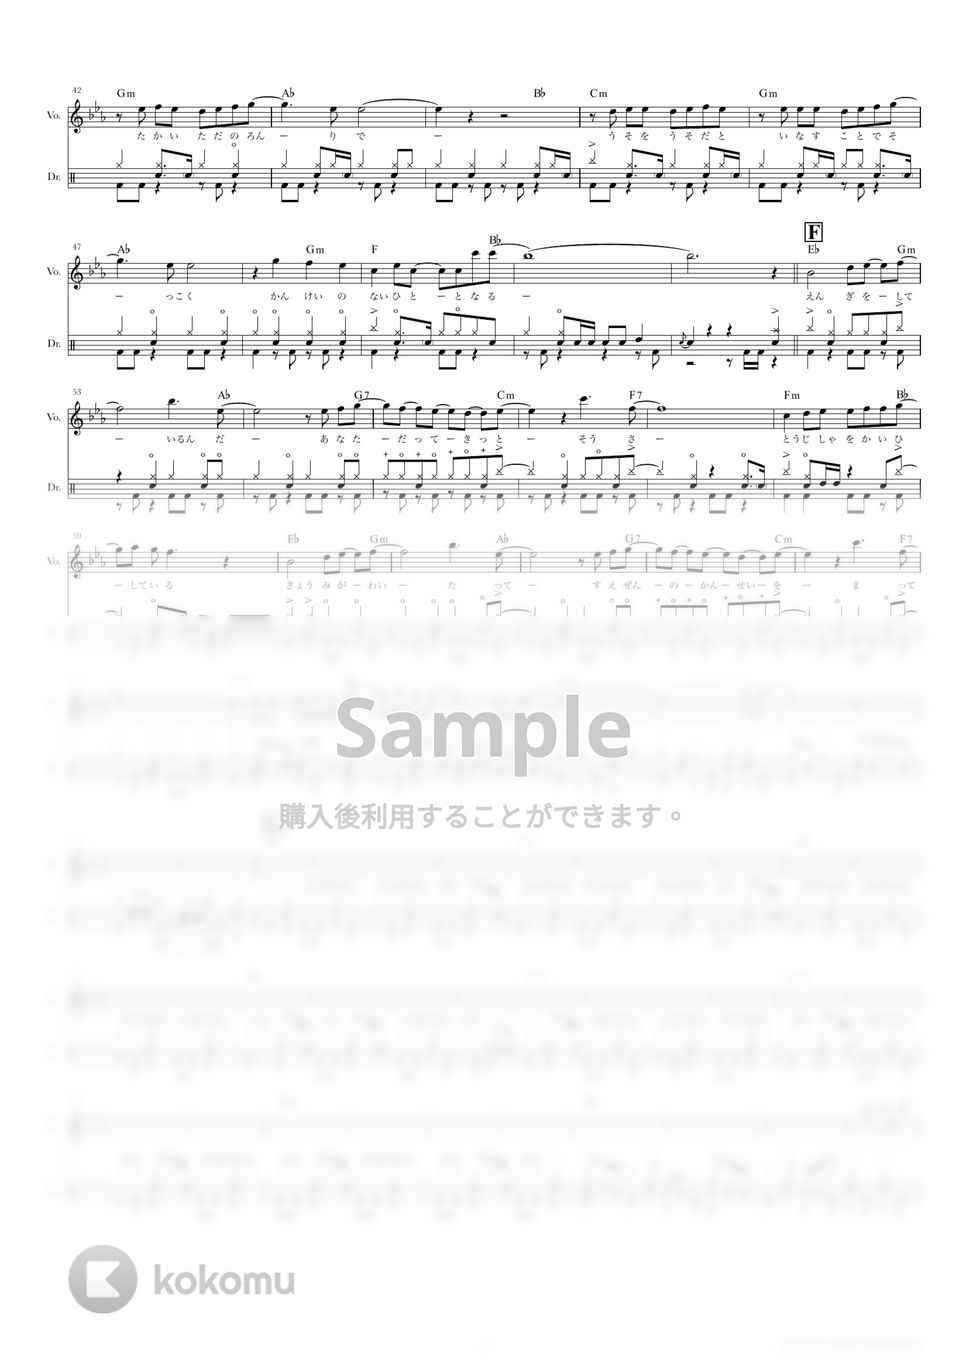 東京事変 - 群青日和 (ドラムスコア・歌詞・コード付き) by TRIAD GUITAR SCHOOL